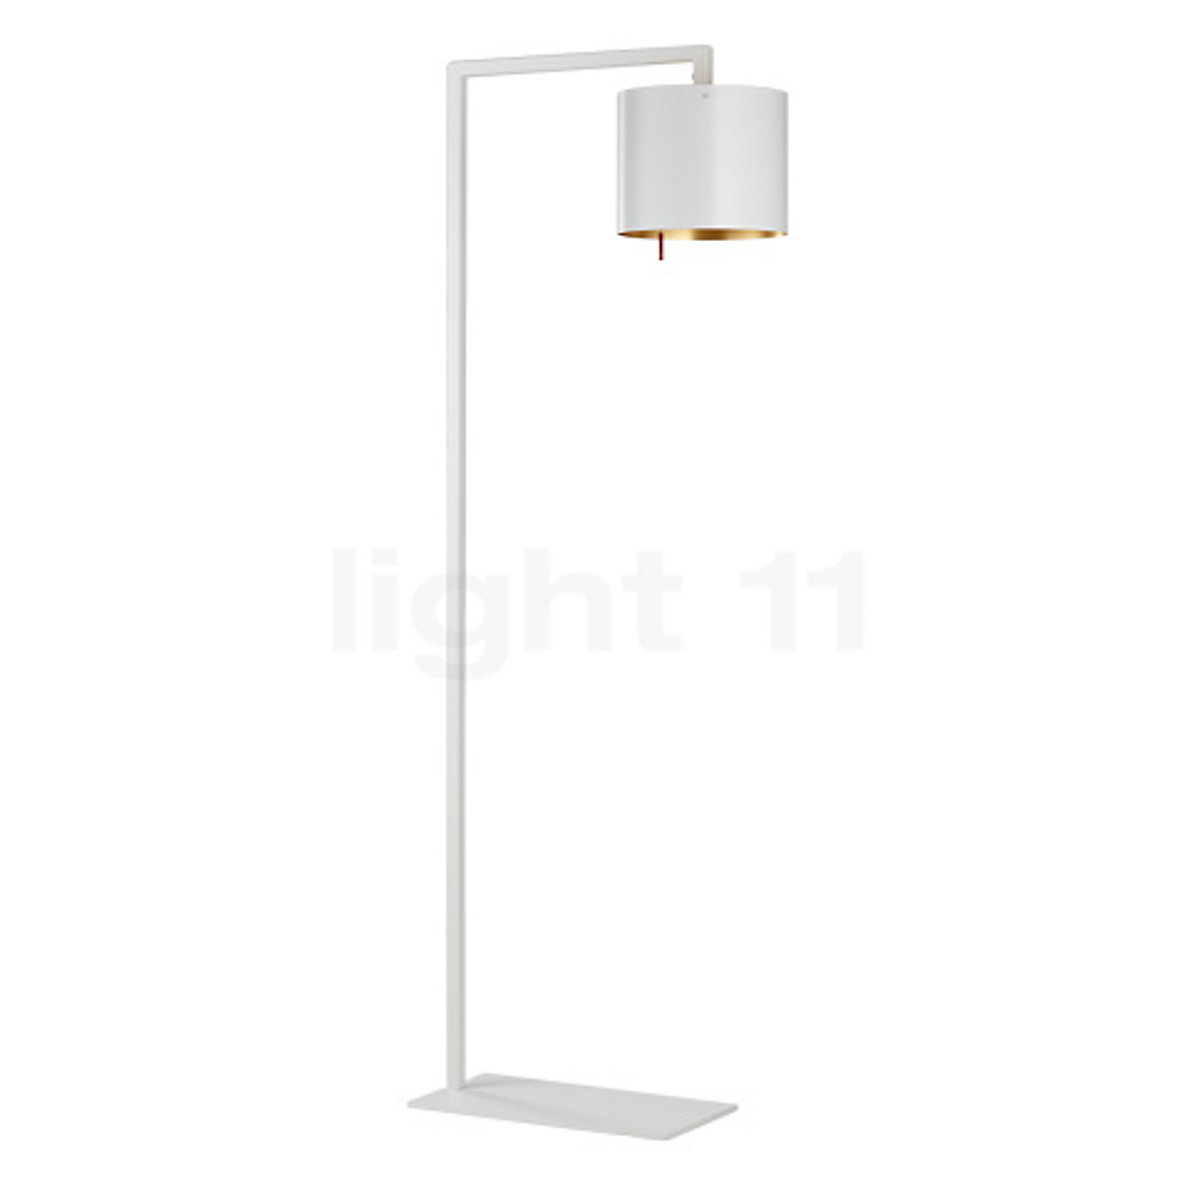 Anta Afra Floor Lamp At Light11 Eu, White And Gold Floor Lamp